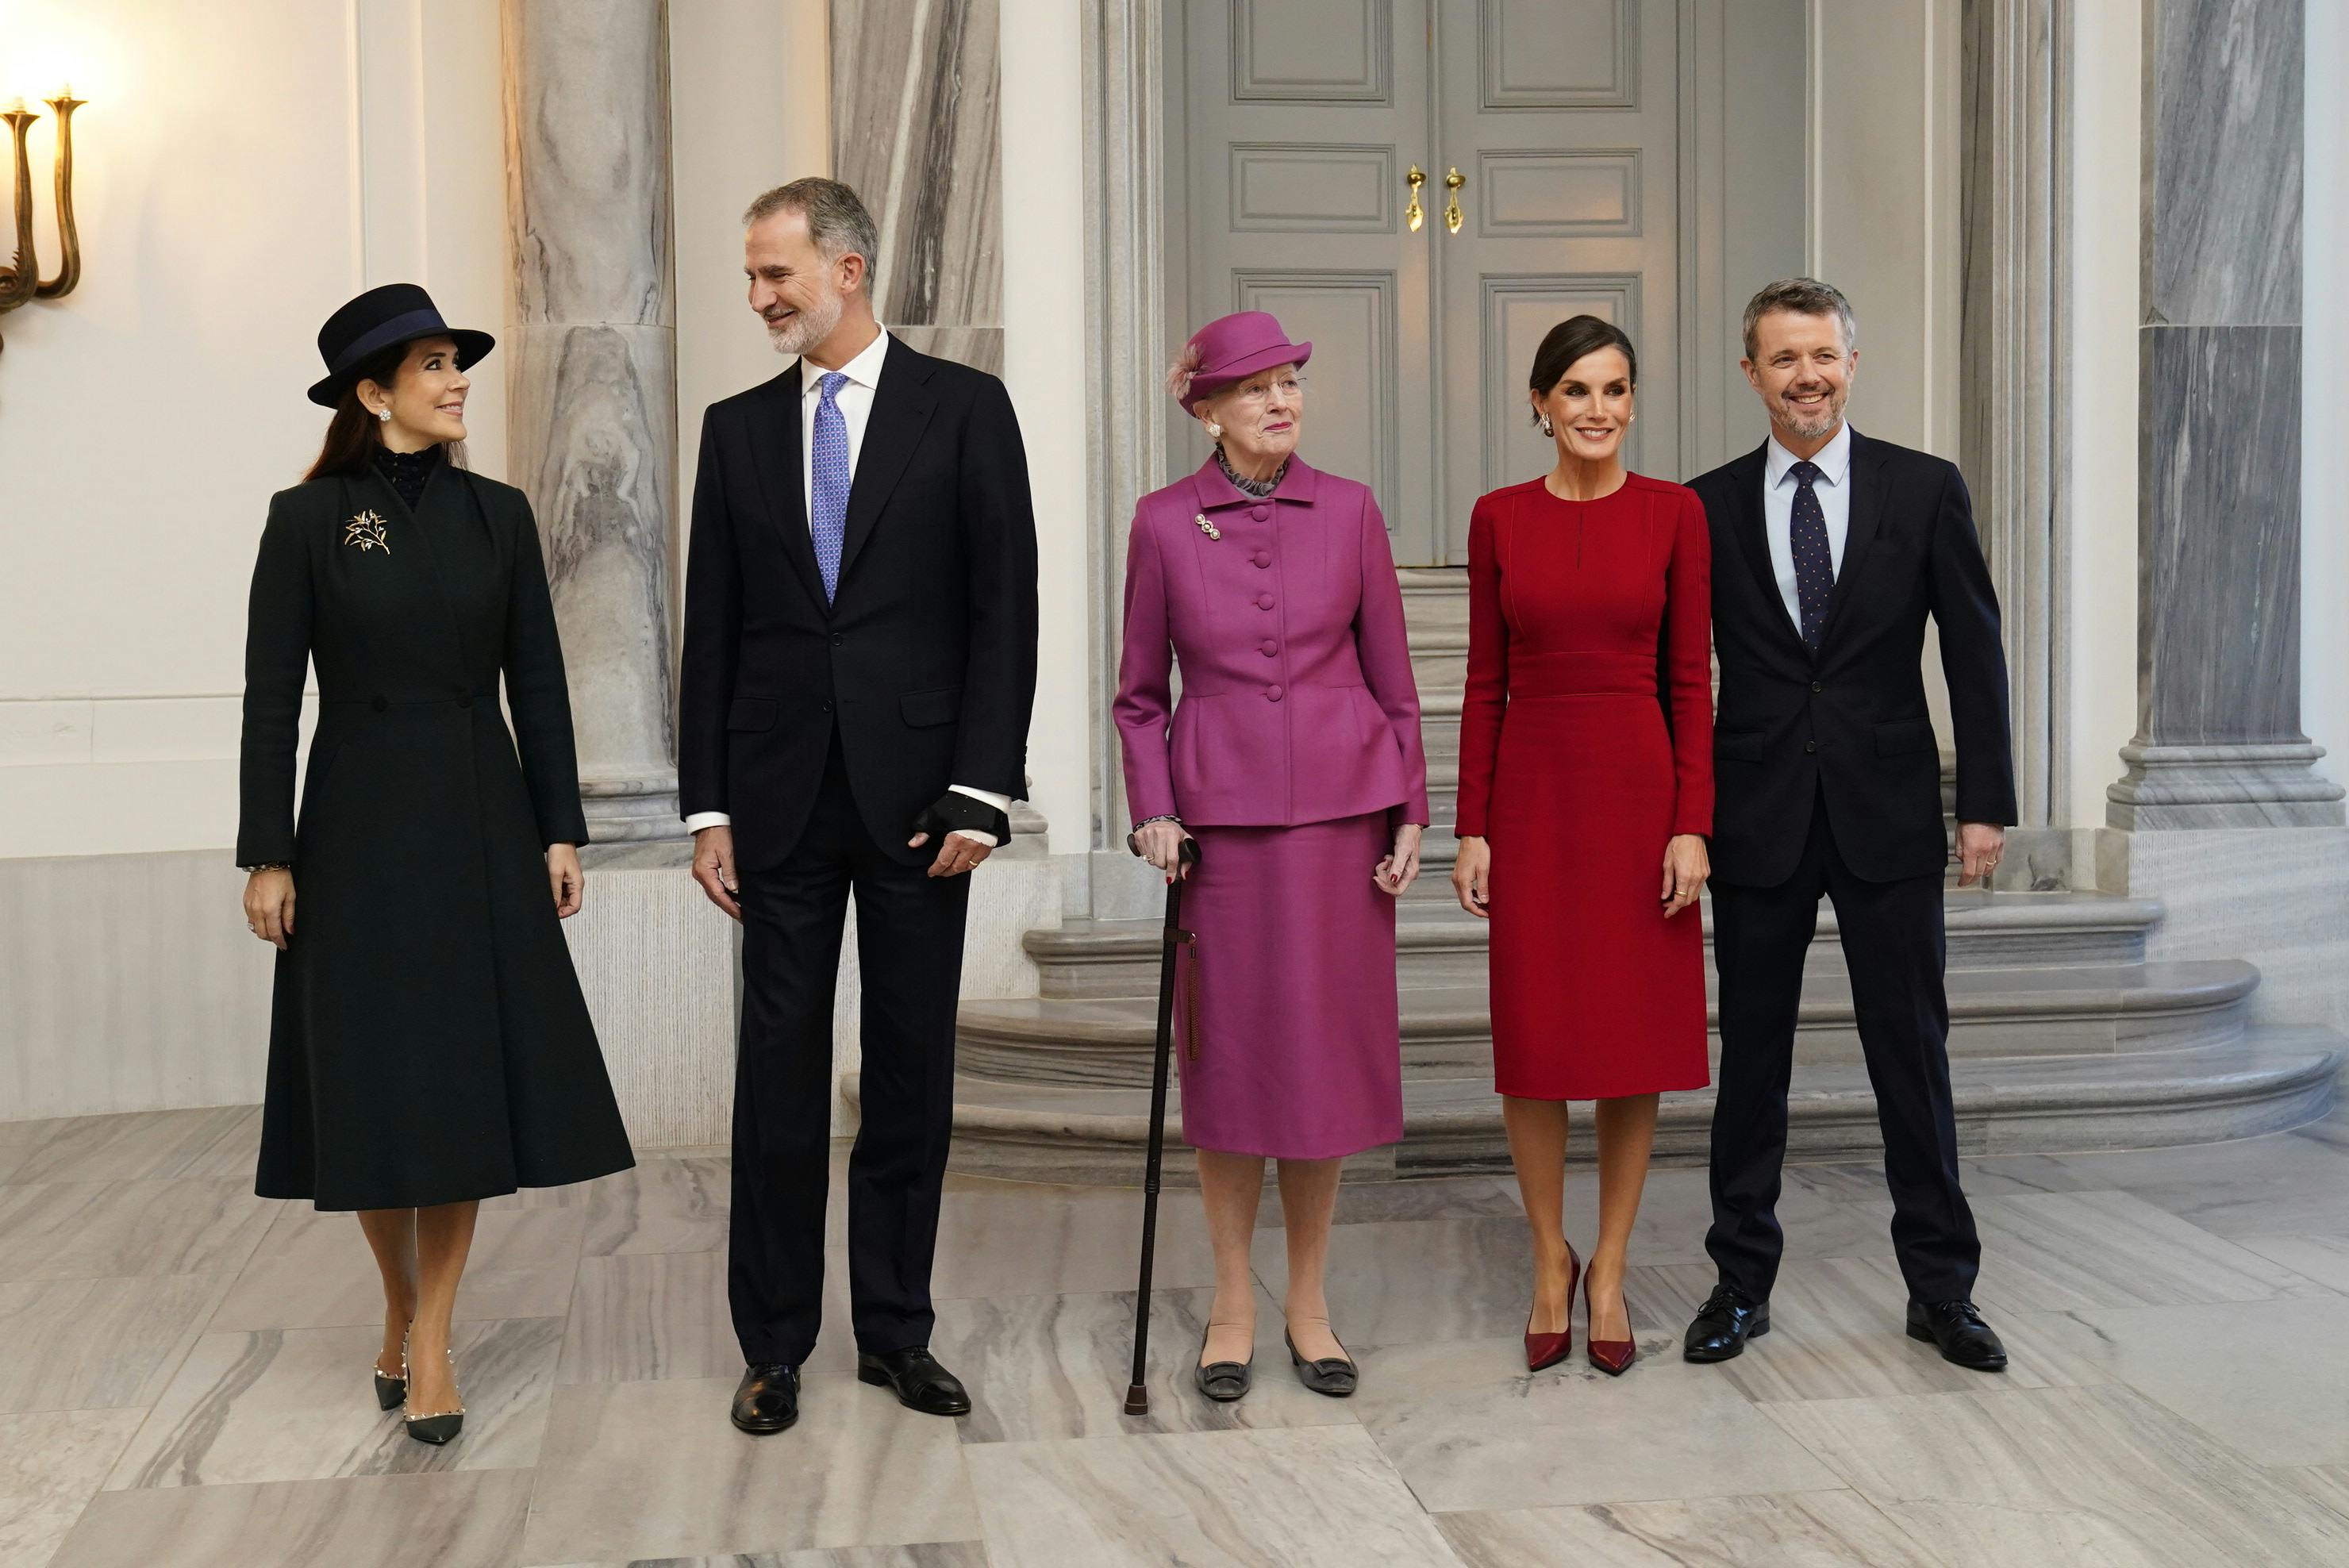 Der er fornemt spansk besøg i disse dage i Danmark. Kong Felipe og dronning Letizia er nemlig på statsbesøg fra mandag den 6. november.